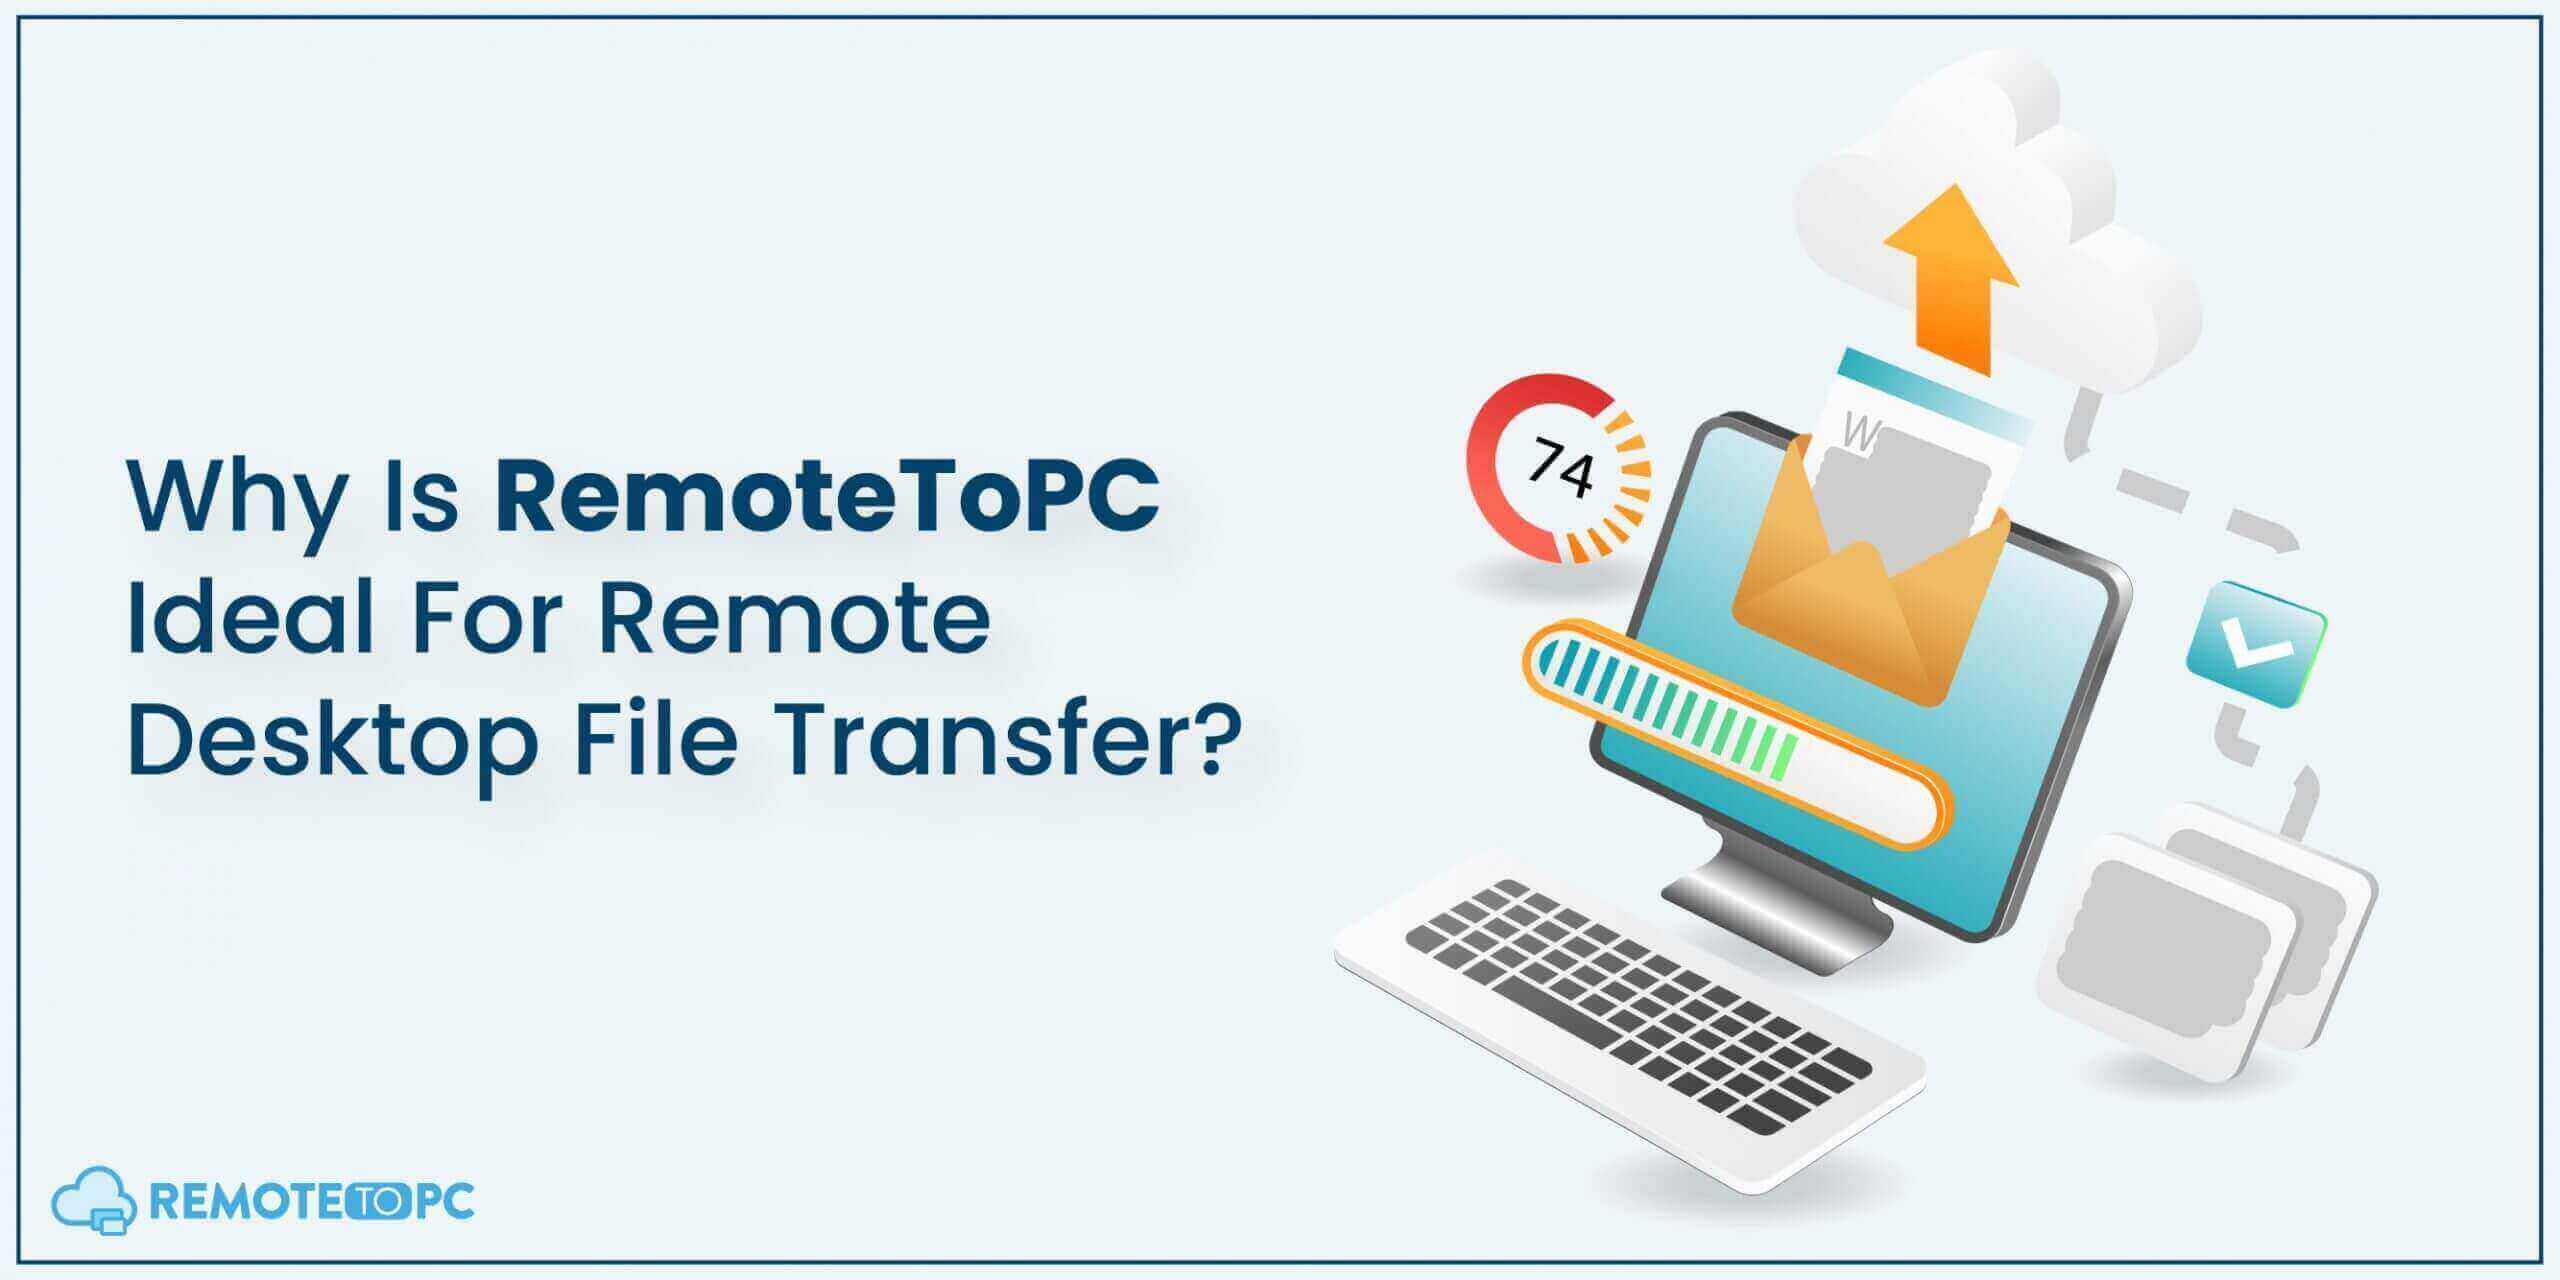 RemoteToPC Remote Desktop File Transfer